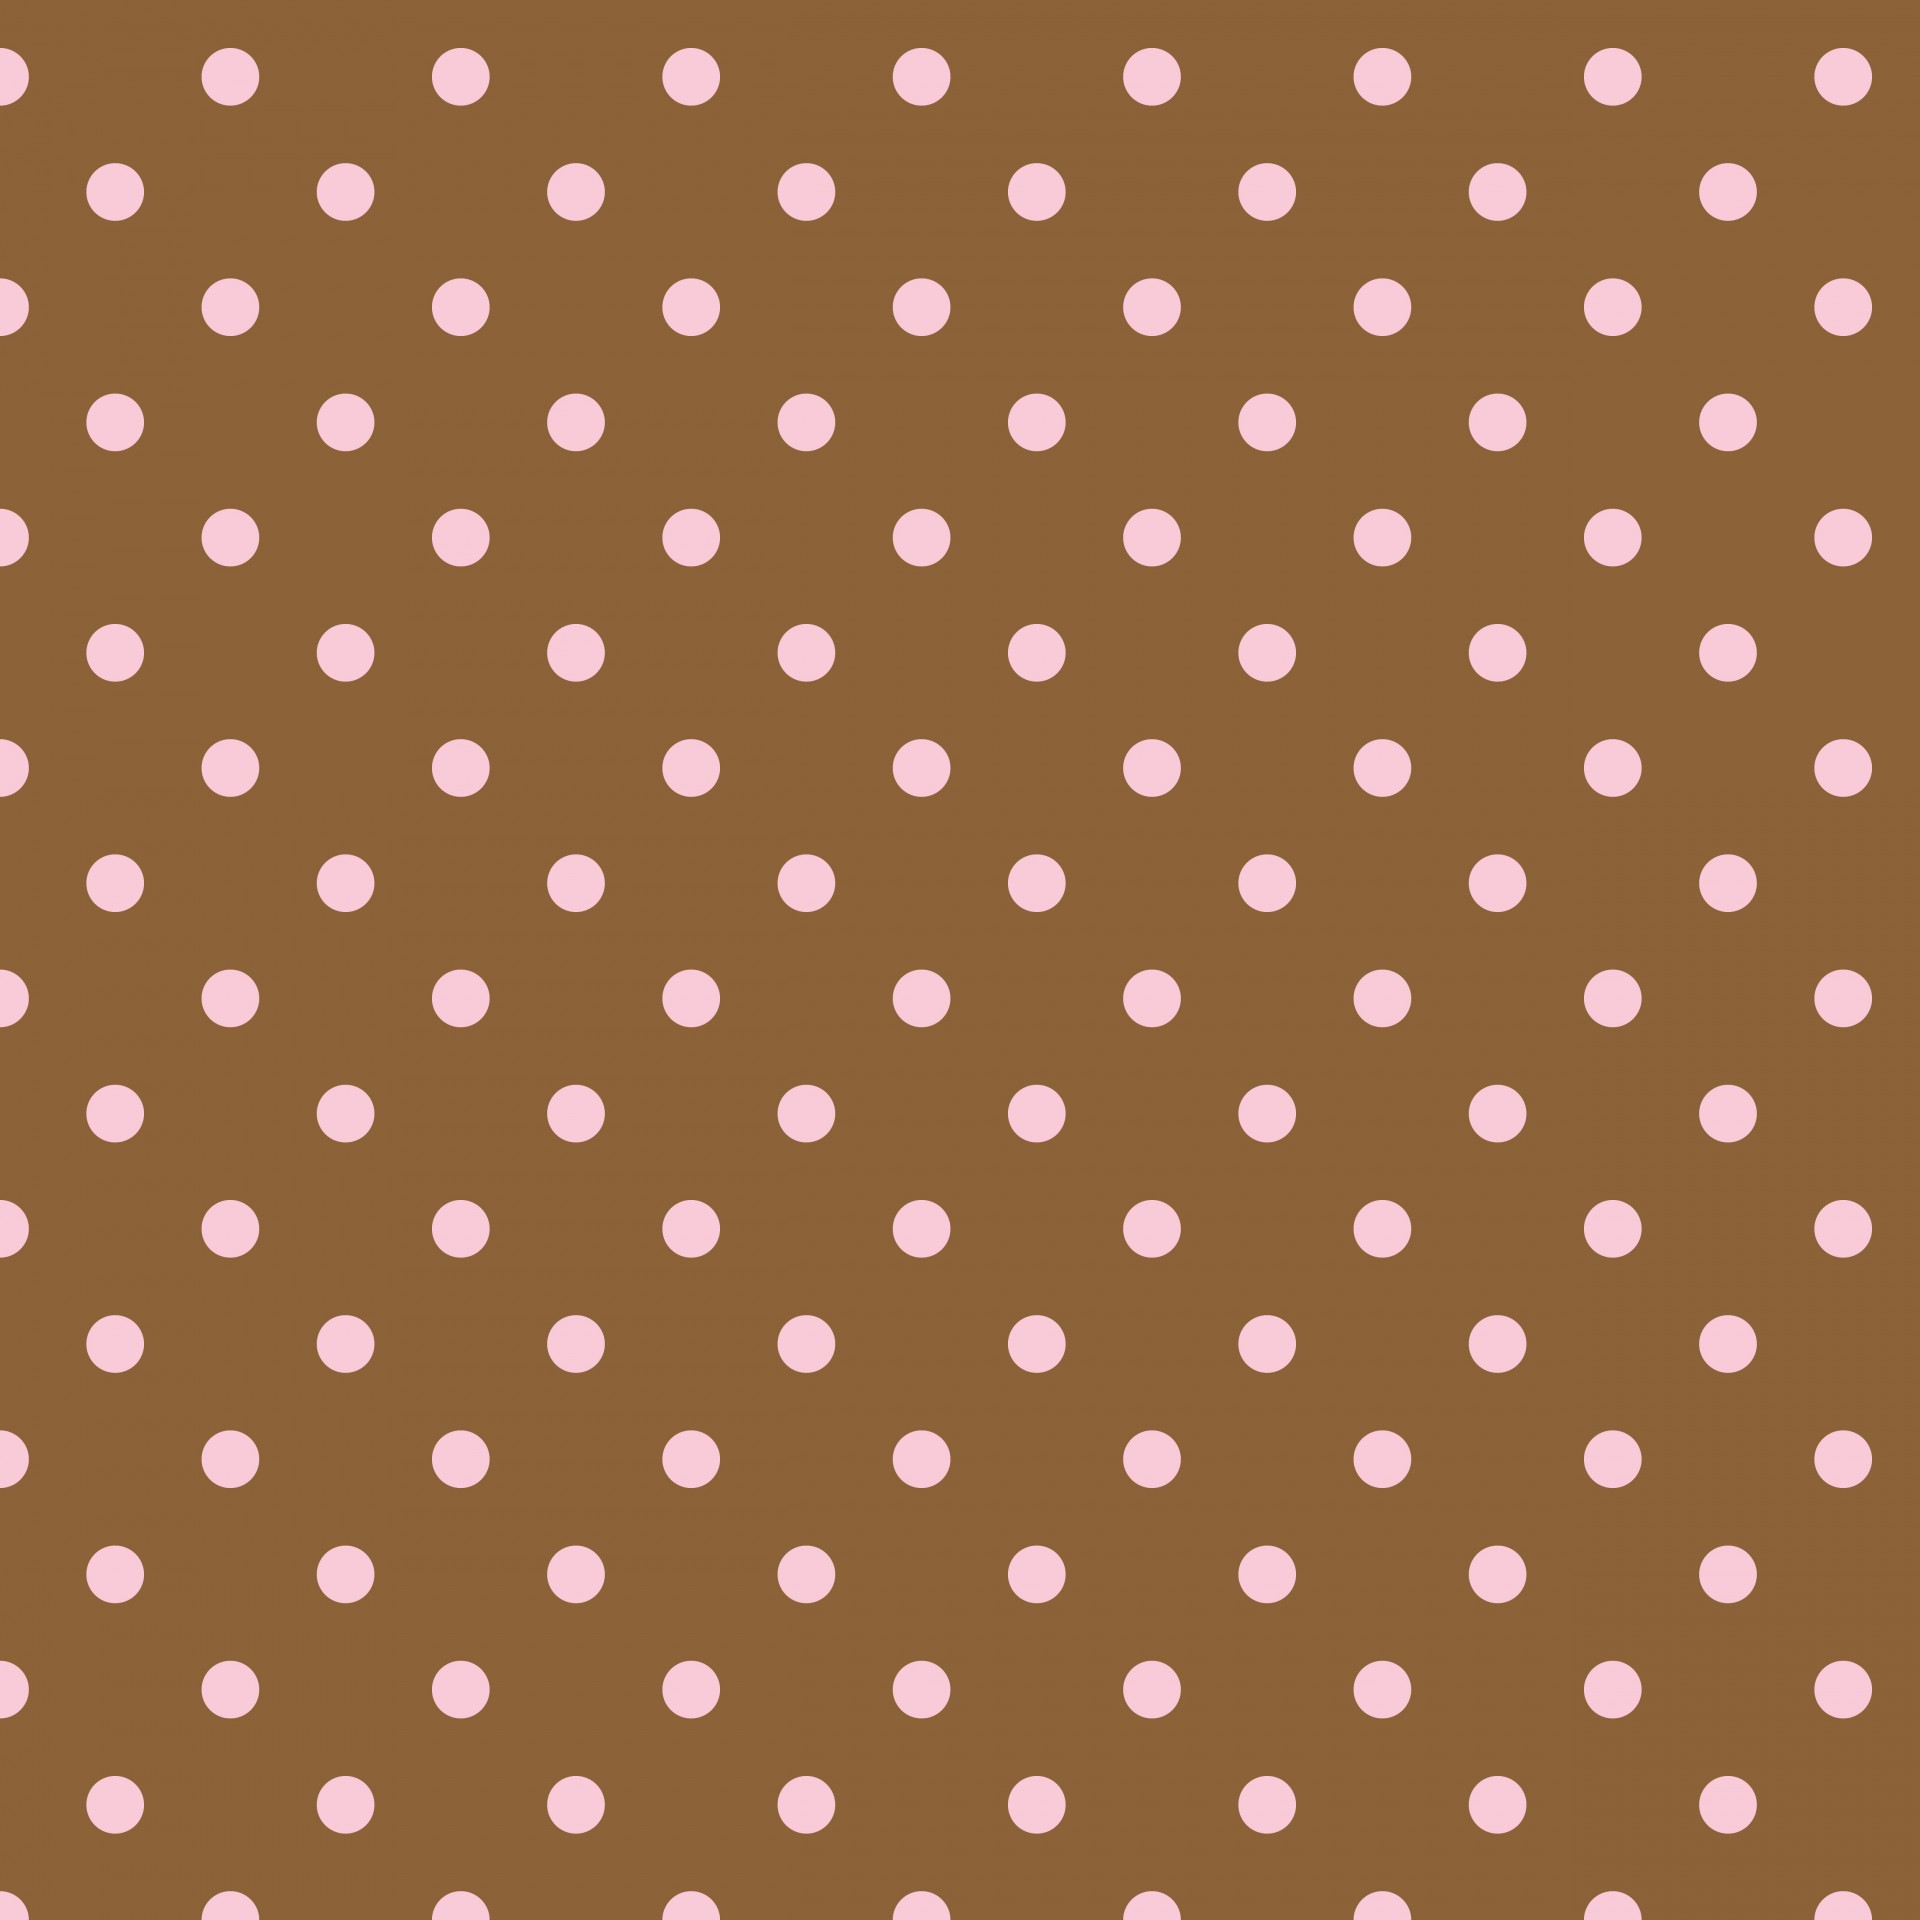 polka dots brown pink free photo